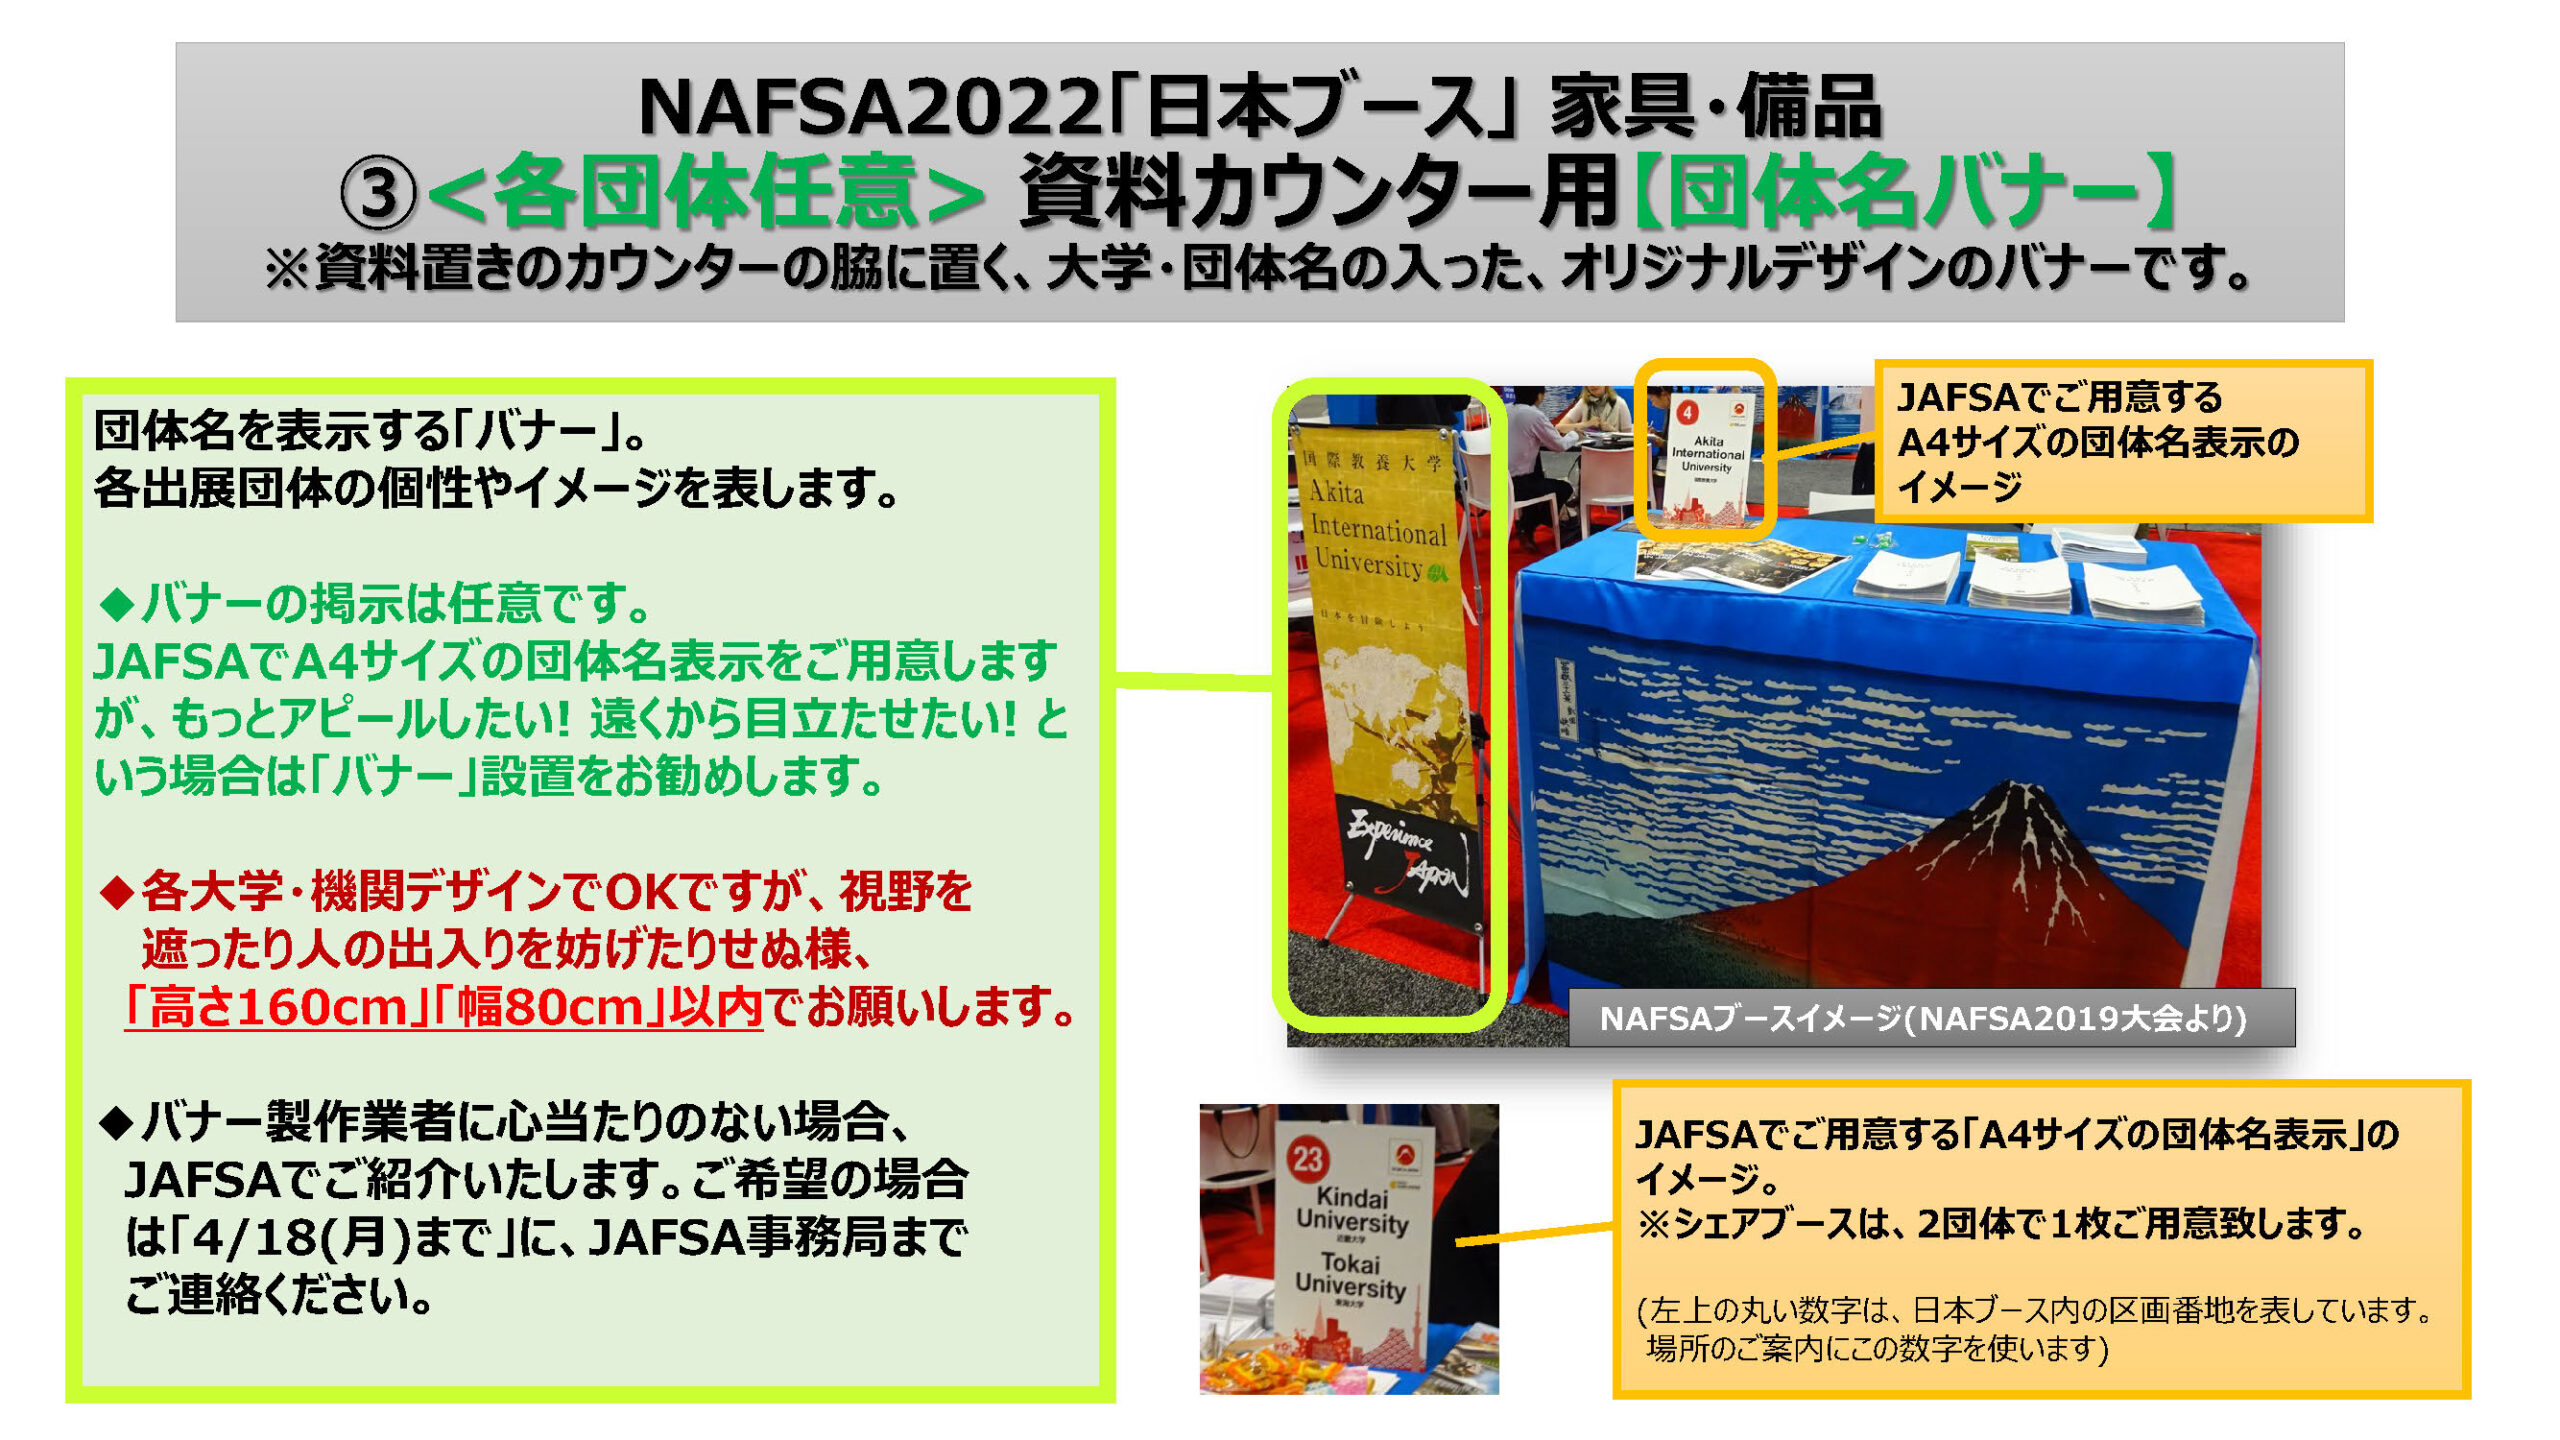 追加家具、赤富士クロス、団体名バナー「イメージ資料」P1 (NAFSA2022)